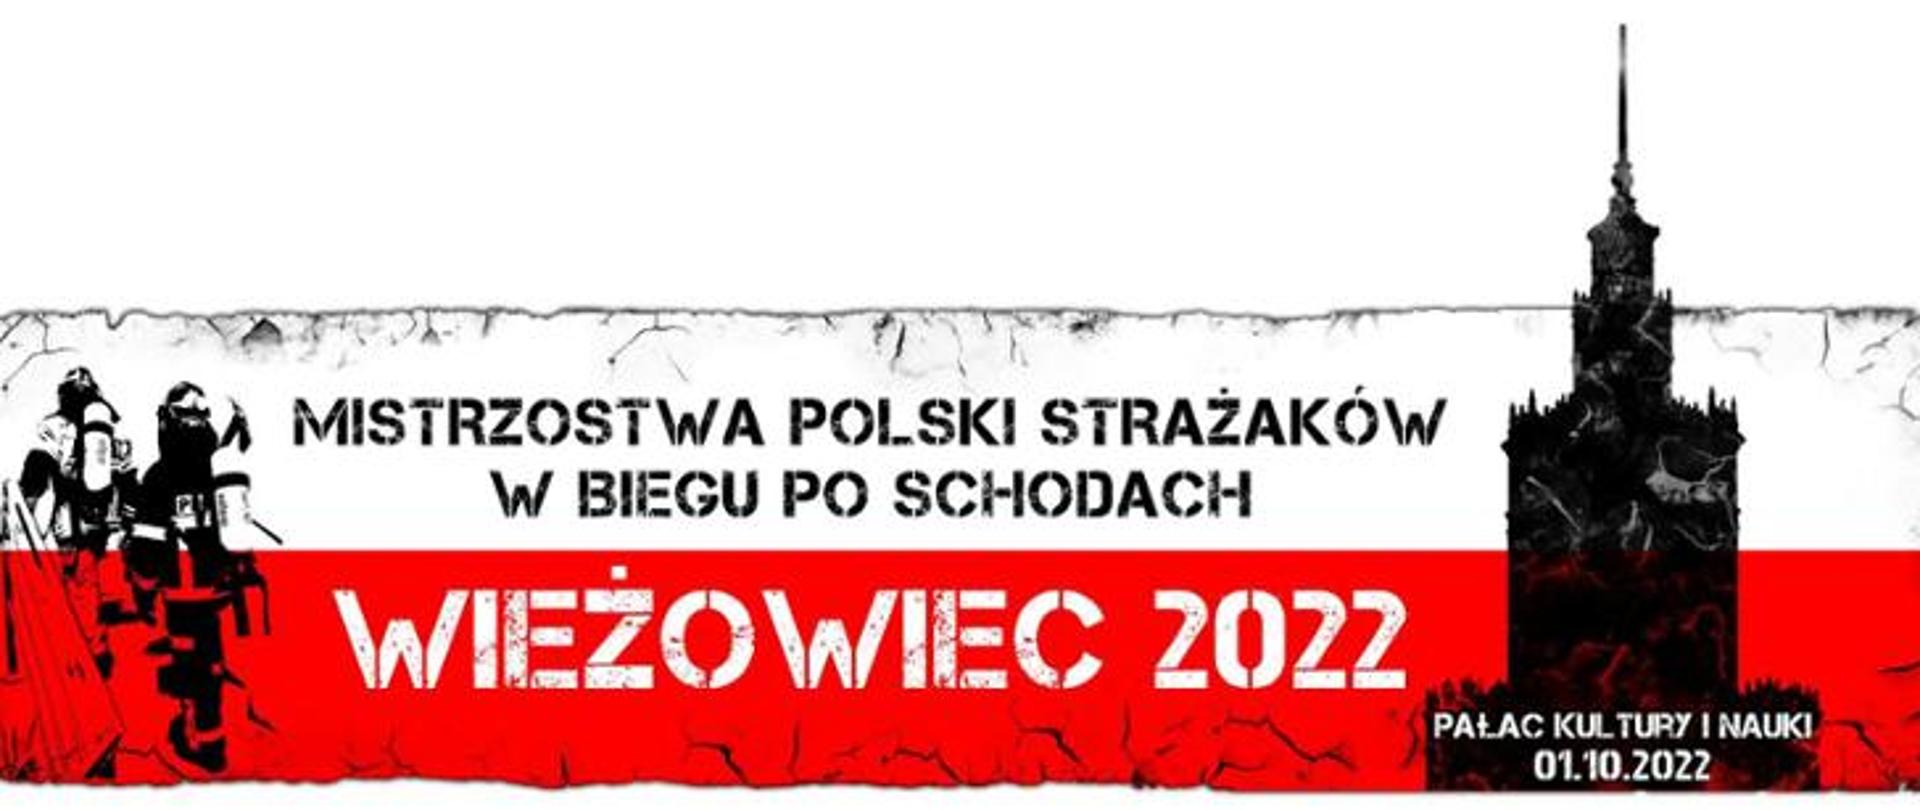 IV Mistrzostwa Polski w Biegu po Schodach 